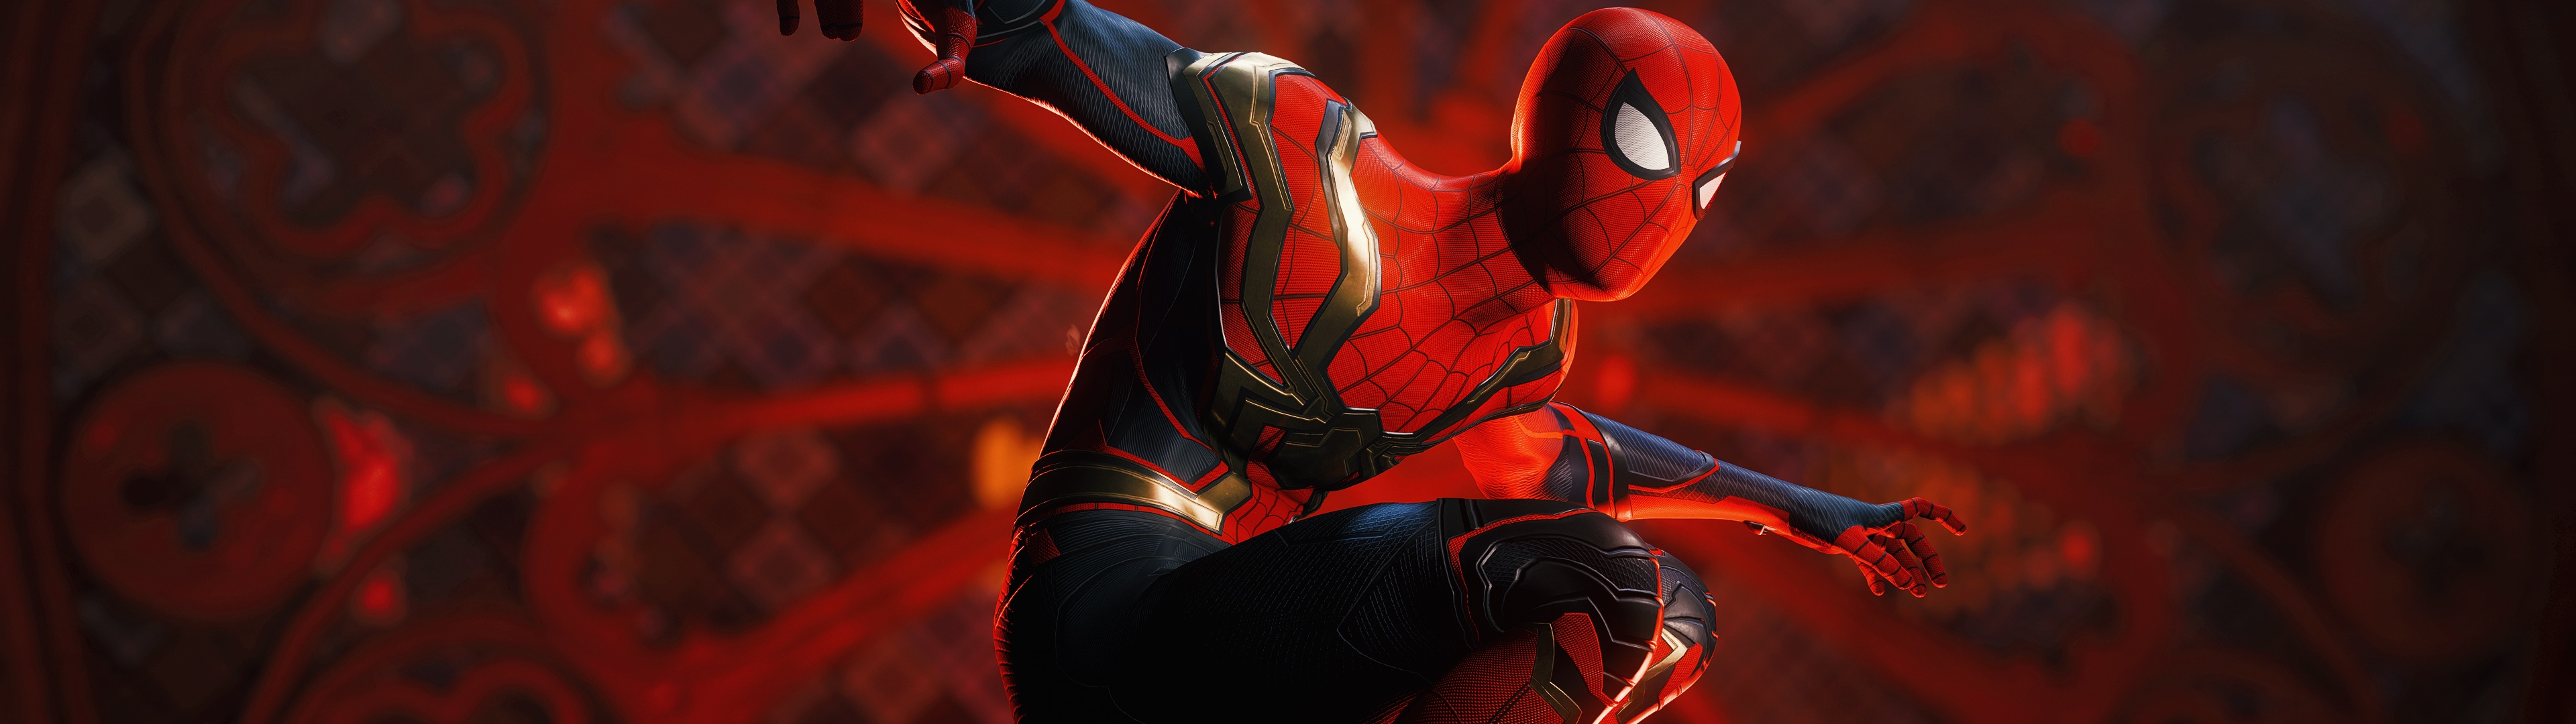 Marvel's Spider-Man Wallpaper 4K, PS4, Spiderman